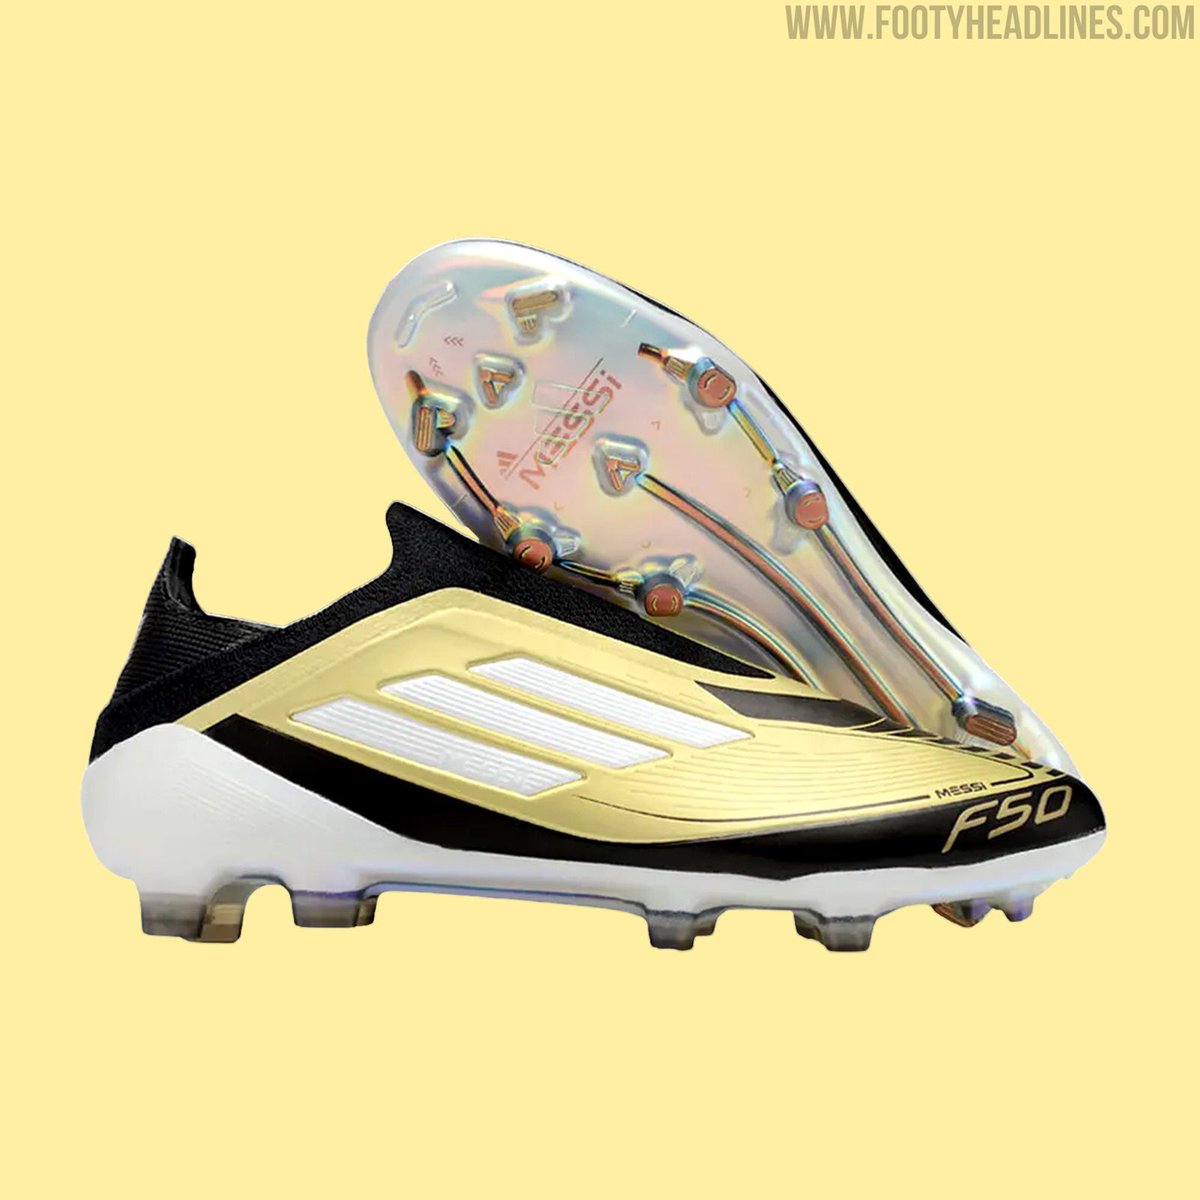 Los nuevos botines de Messi para la COPA AMÉRICA.